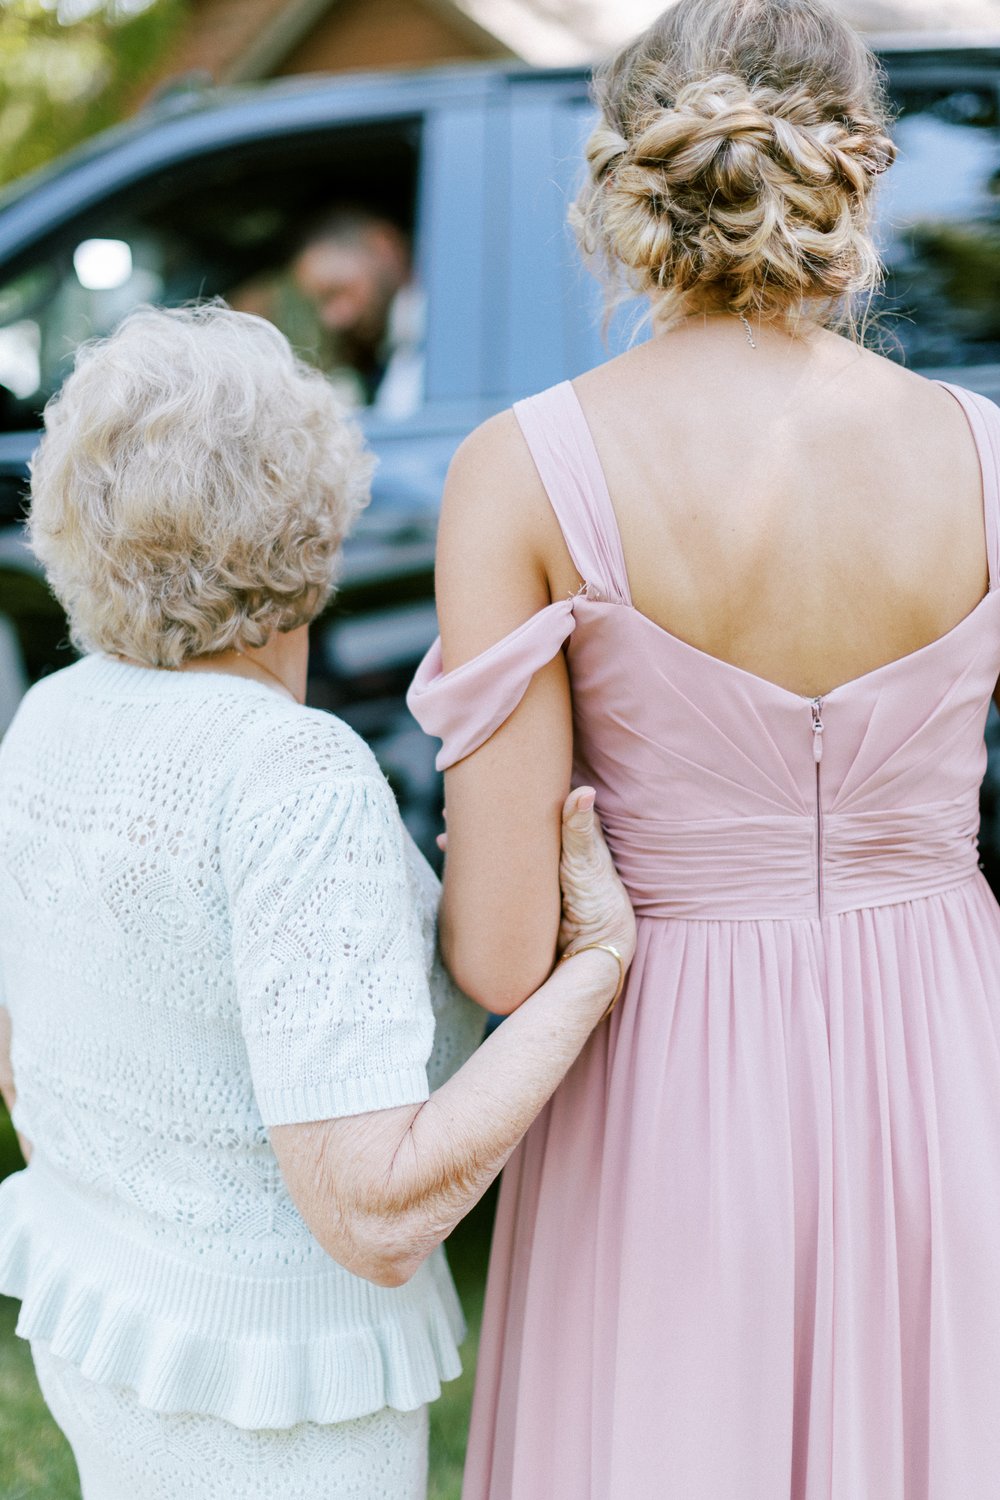 grandma and granddaughter at wedding